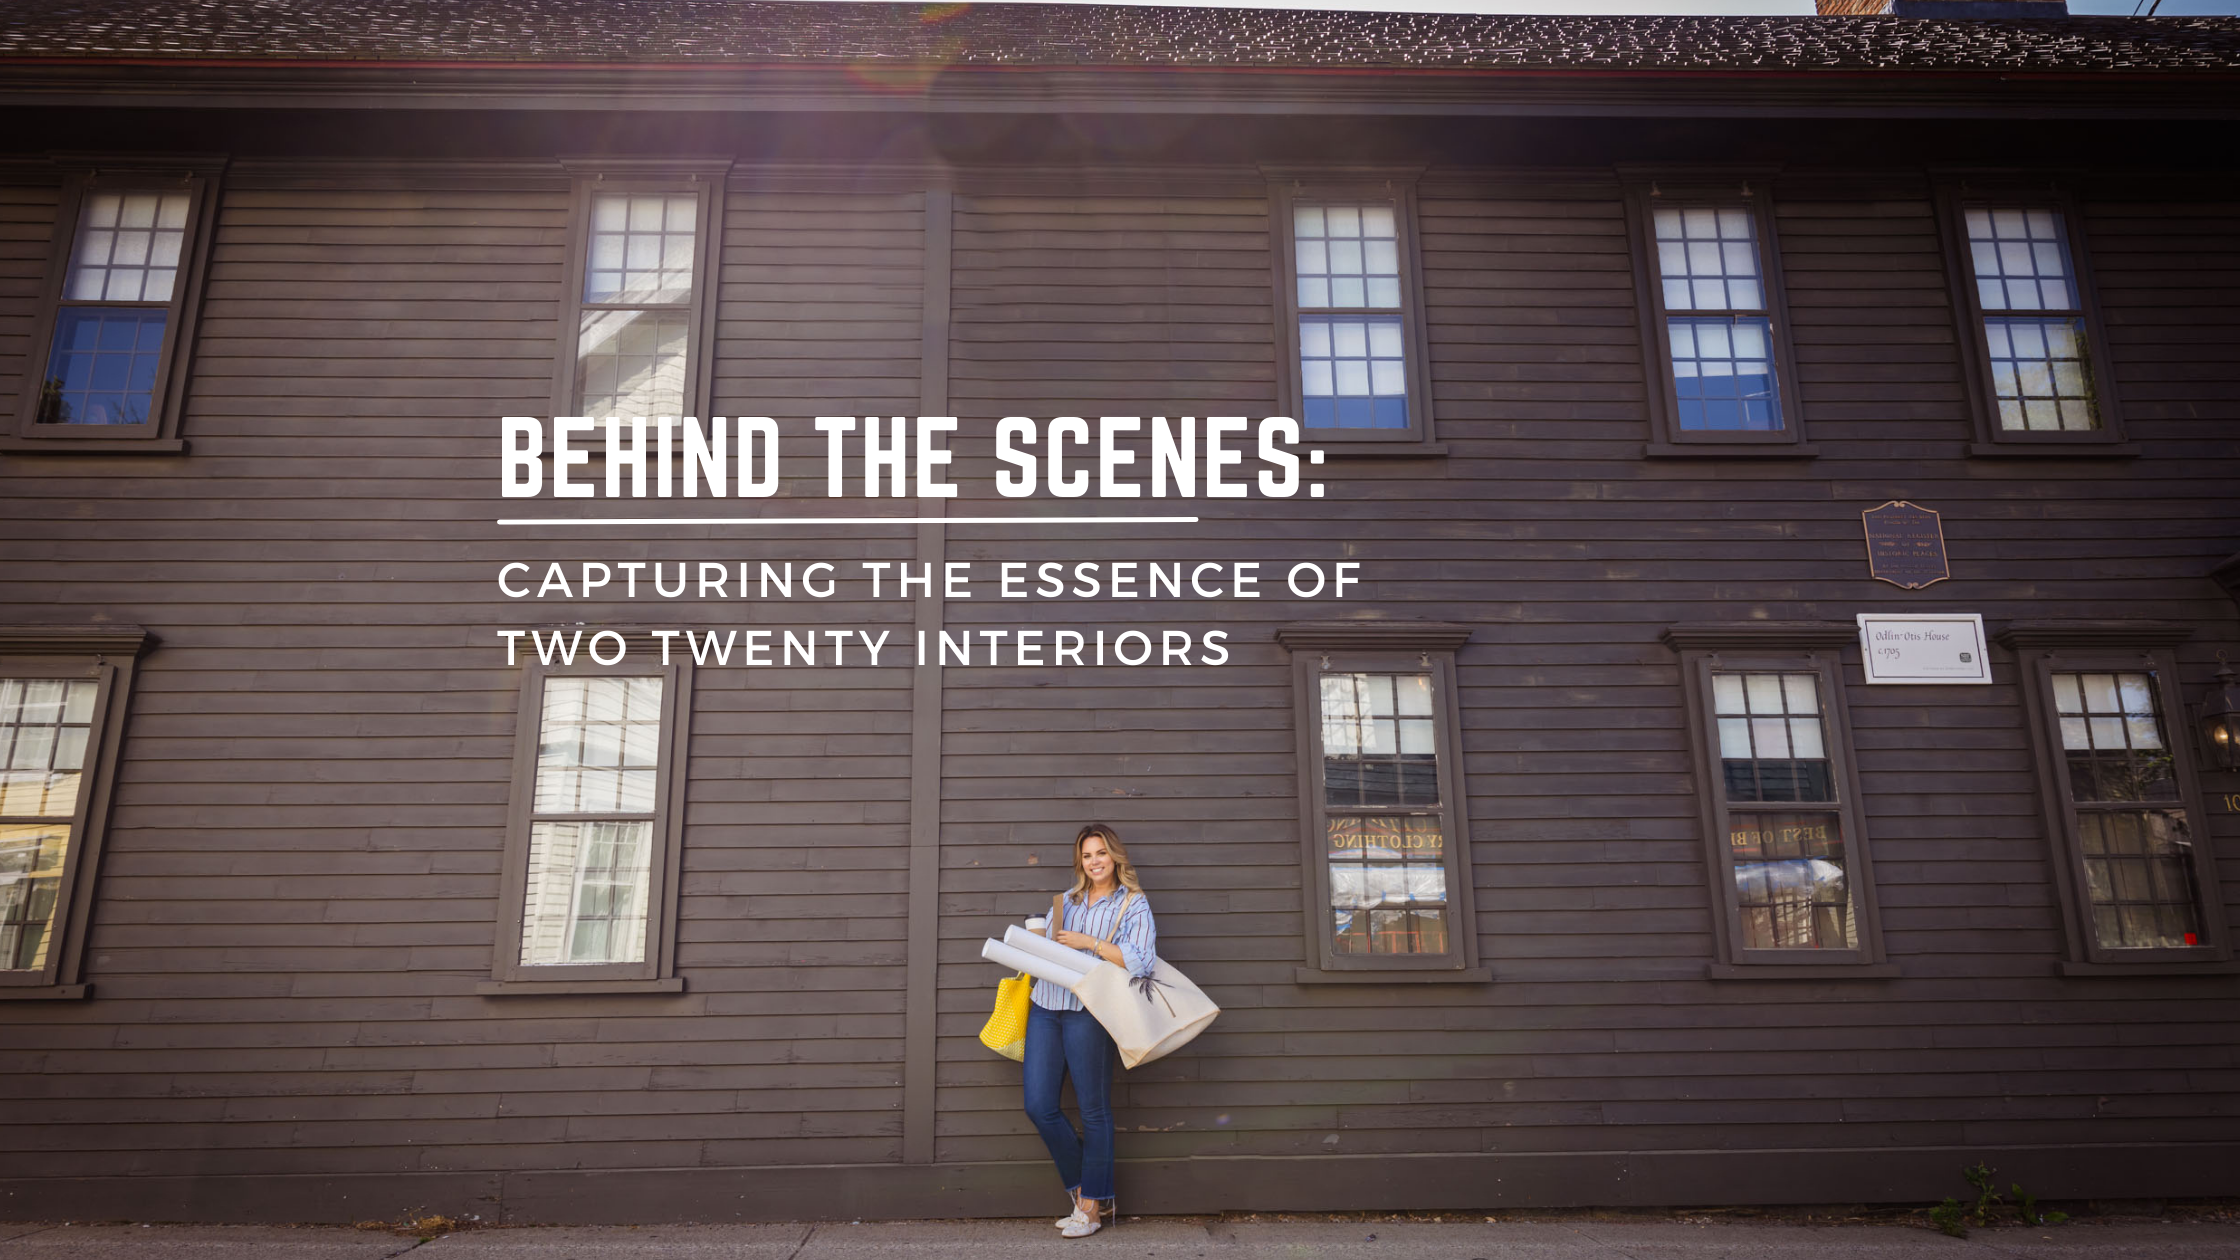 Behind the scenes of capturing two twenty interiors branding shoot